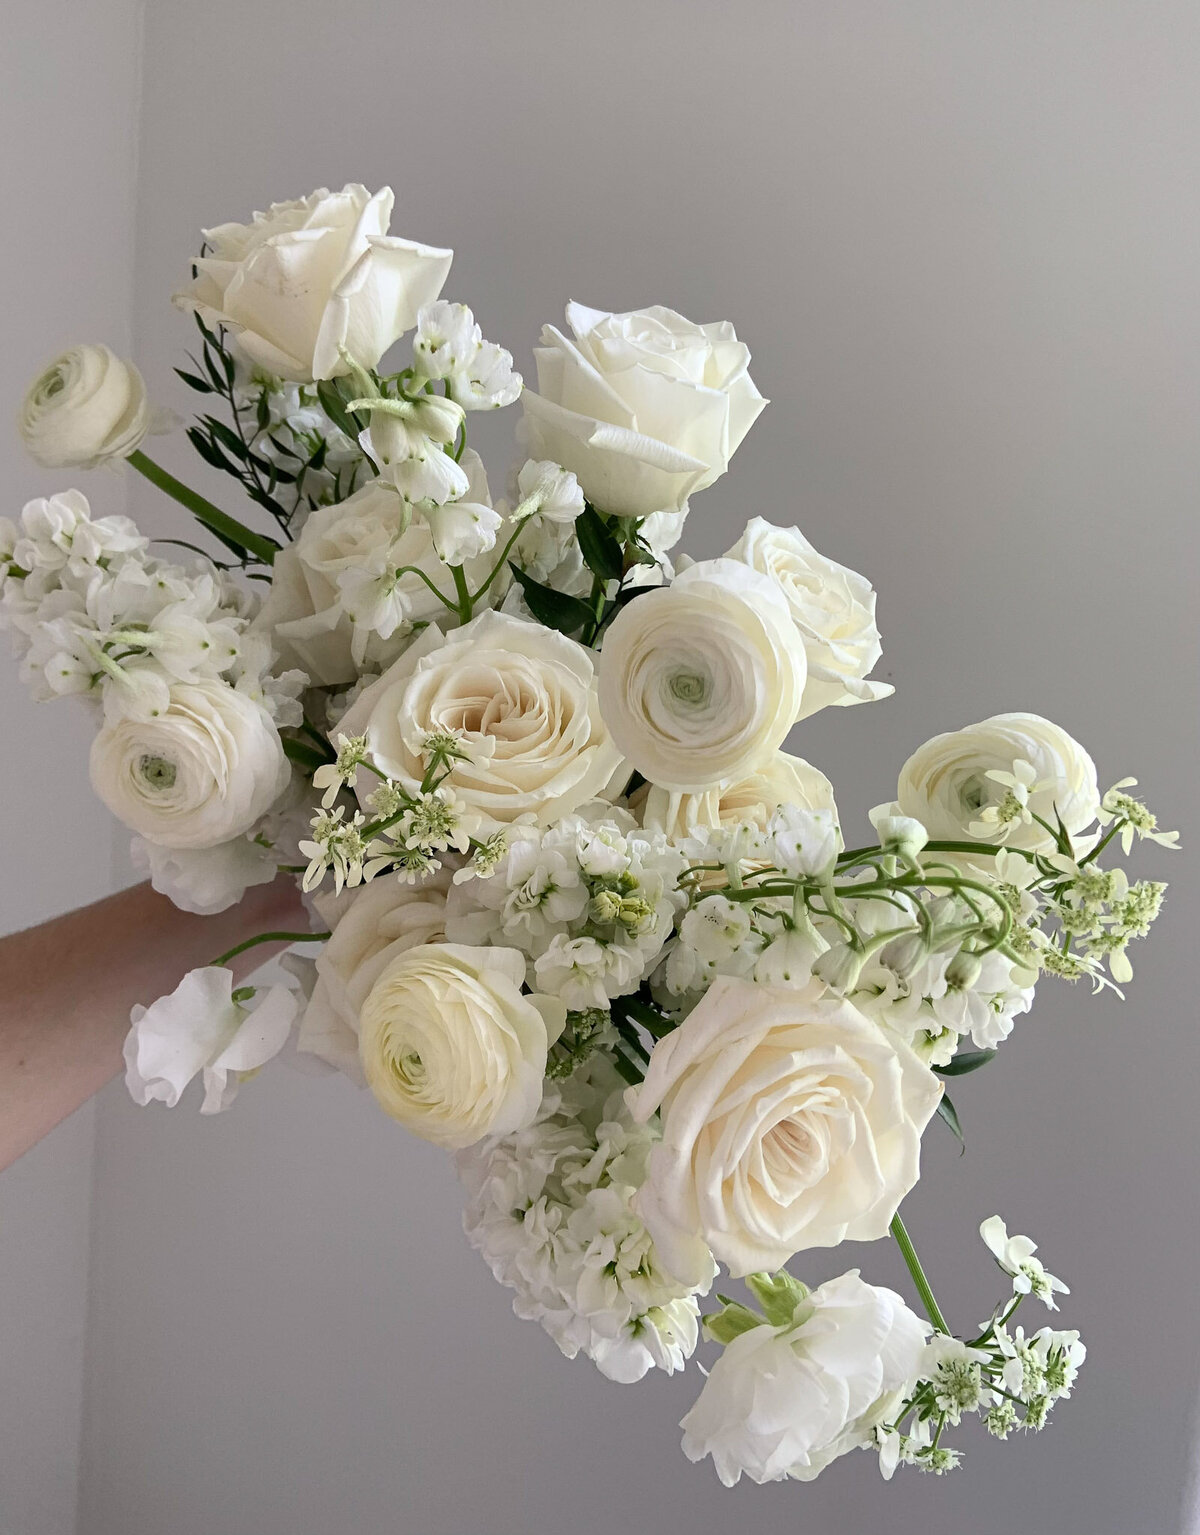 White, glowy bridal bouquet for a Utah wedding.